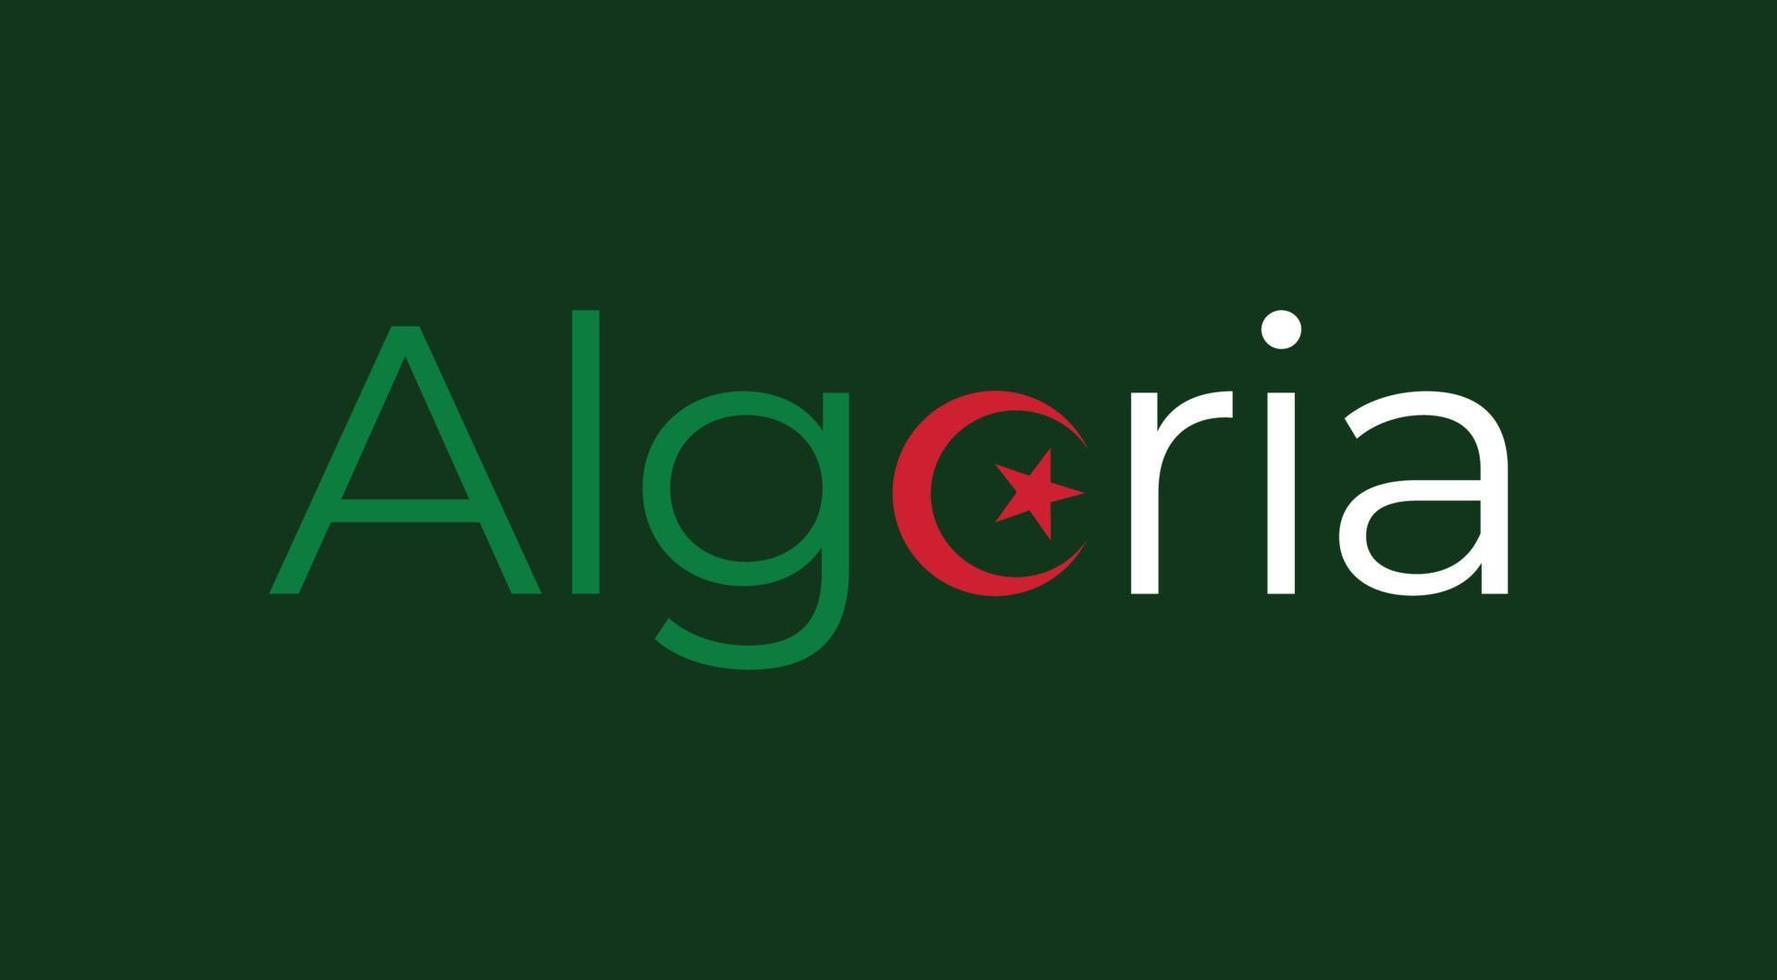 conception de typographie de l'algerie vecteur